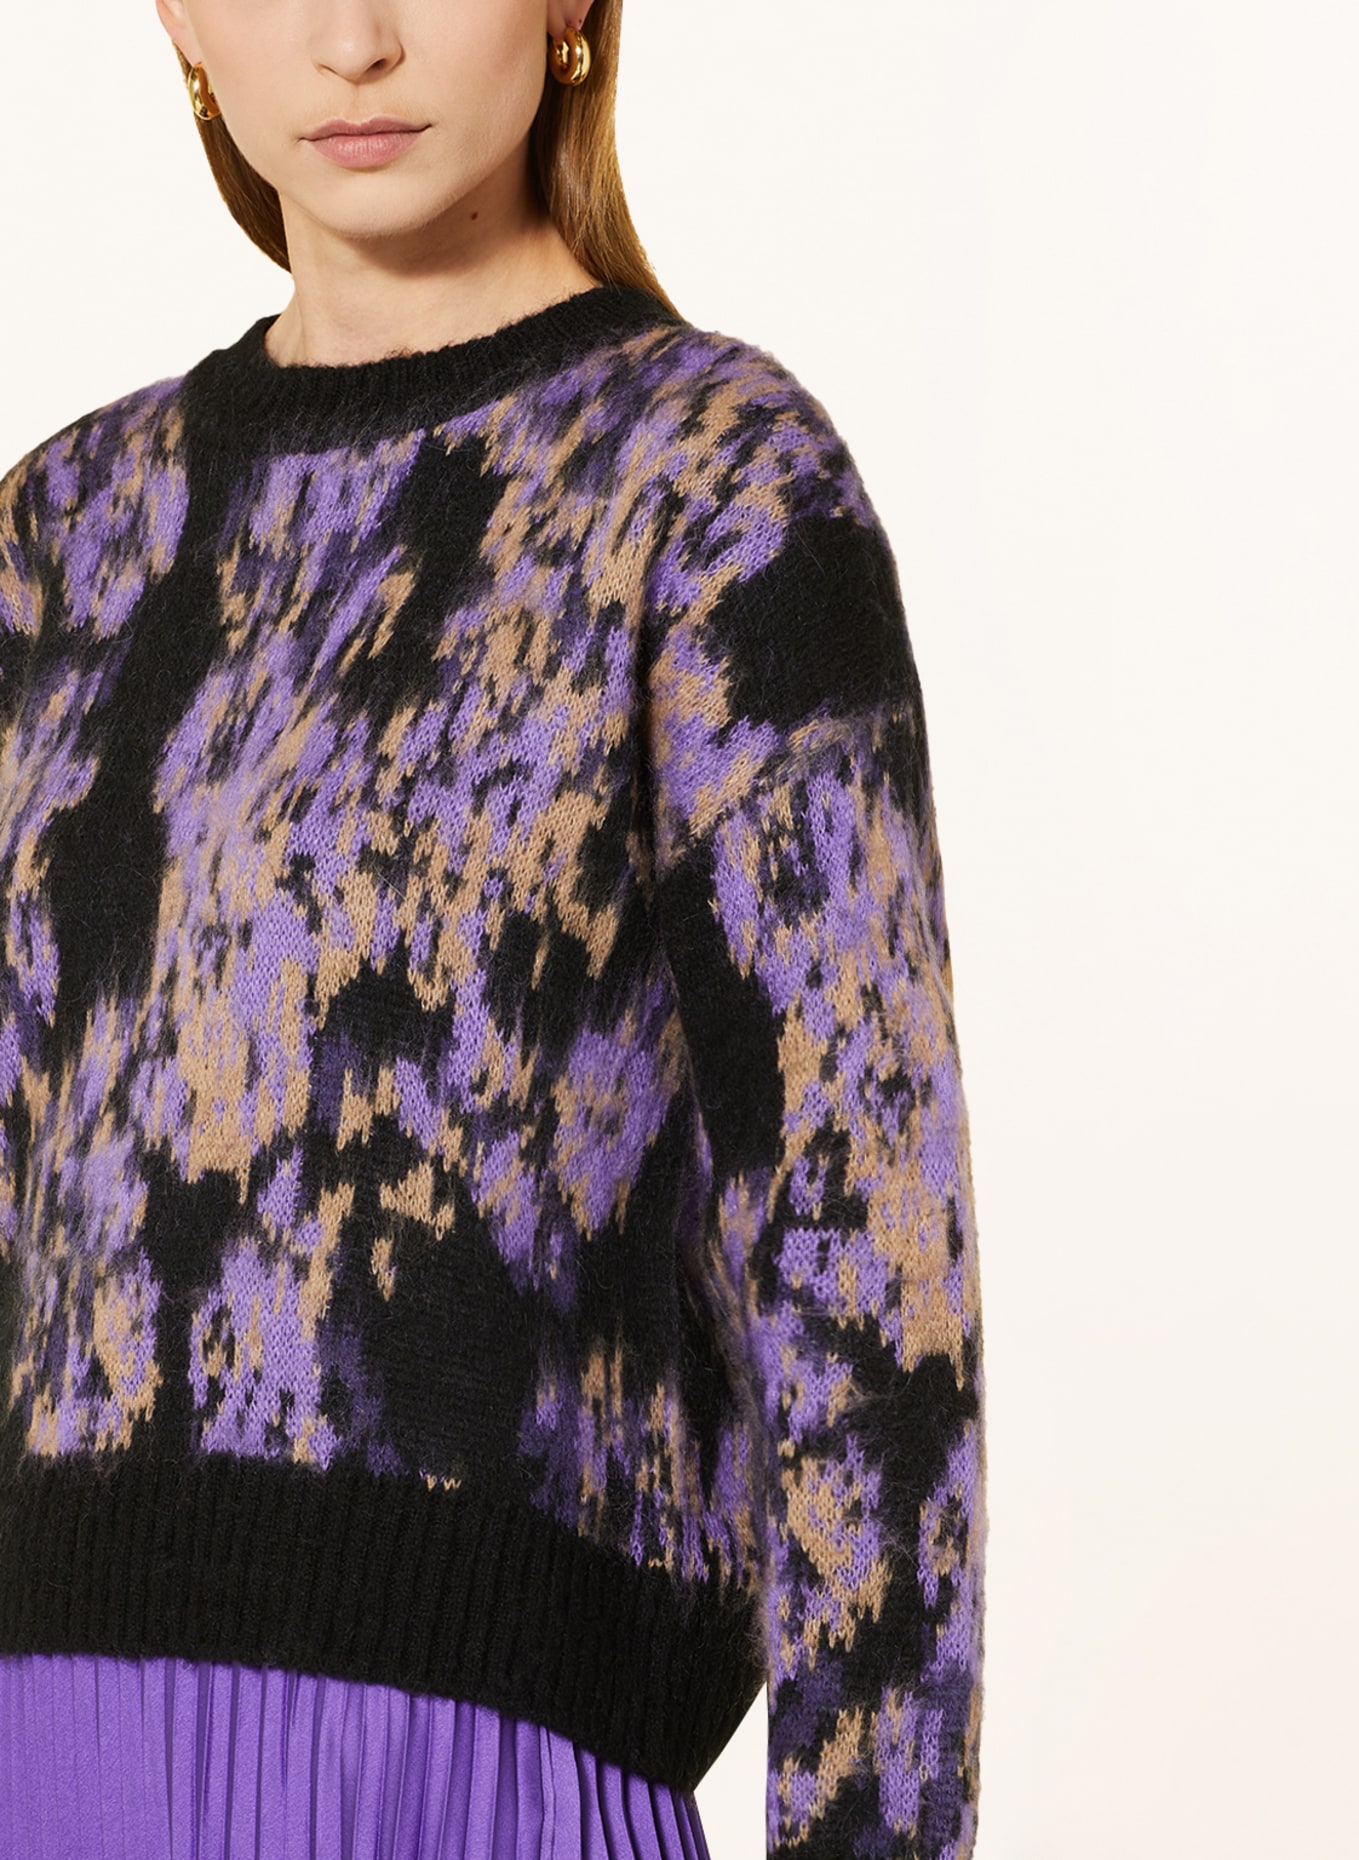 CATNOIR Sweater, Color: LIGHT PURPLE/ BLACK/ BEIGE (Image 4)